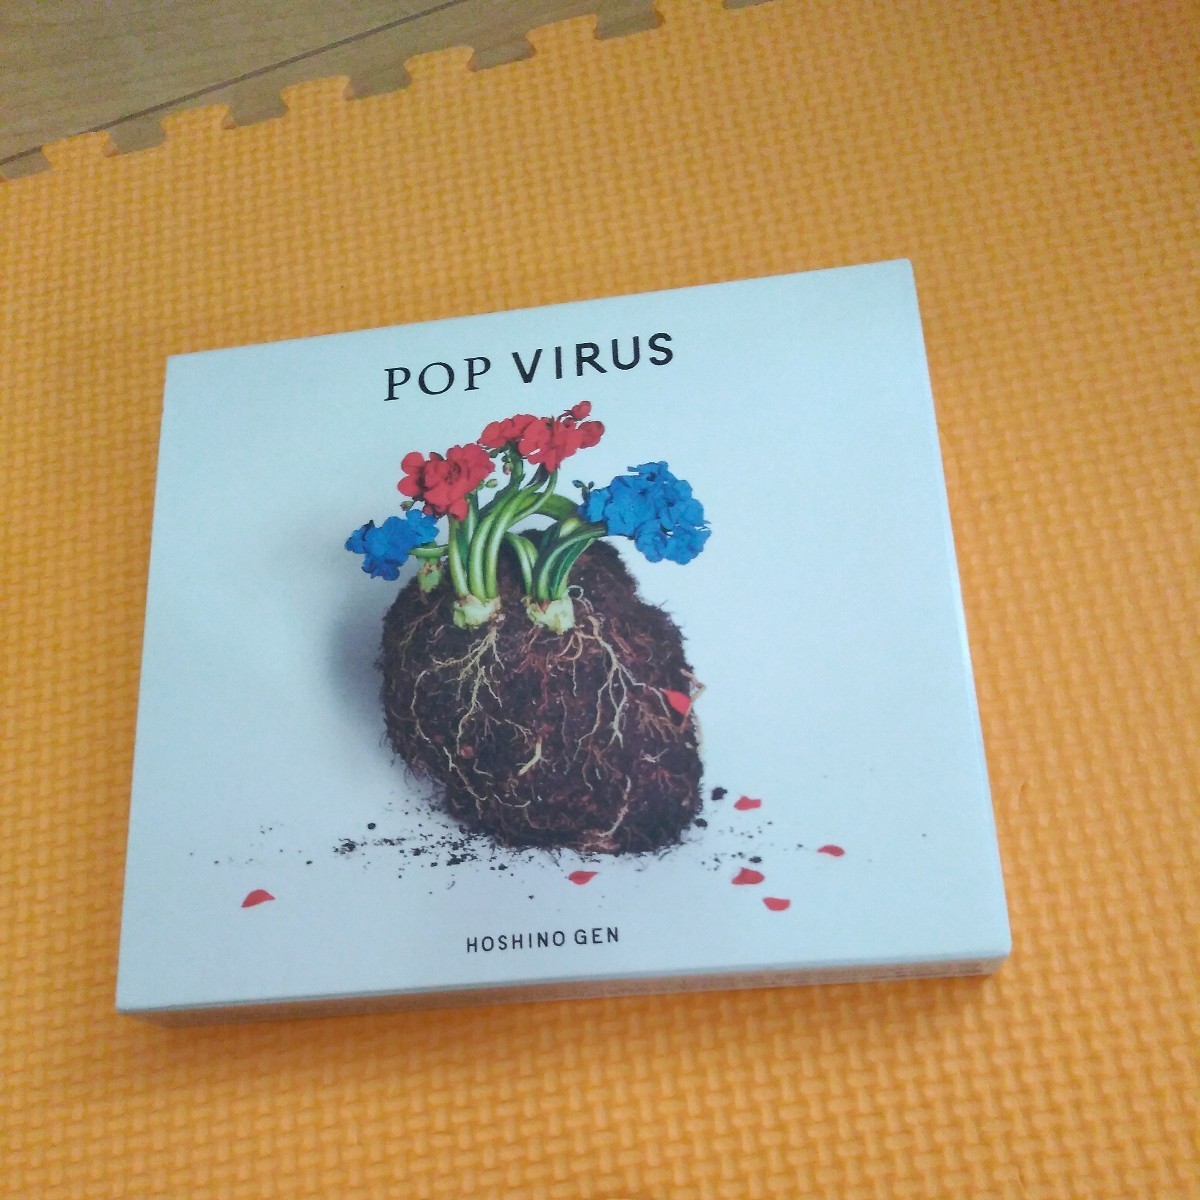 星野源 オリジナルアルバムCD+Blu-ray「POP VIRUS」初回限定盤A _画像1